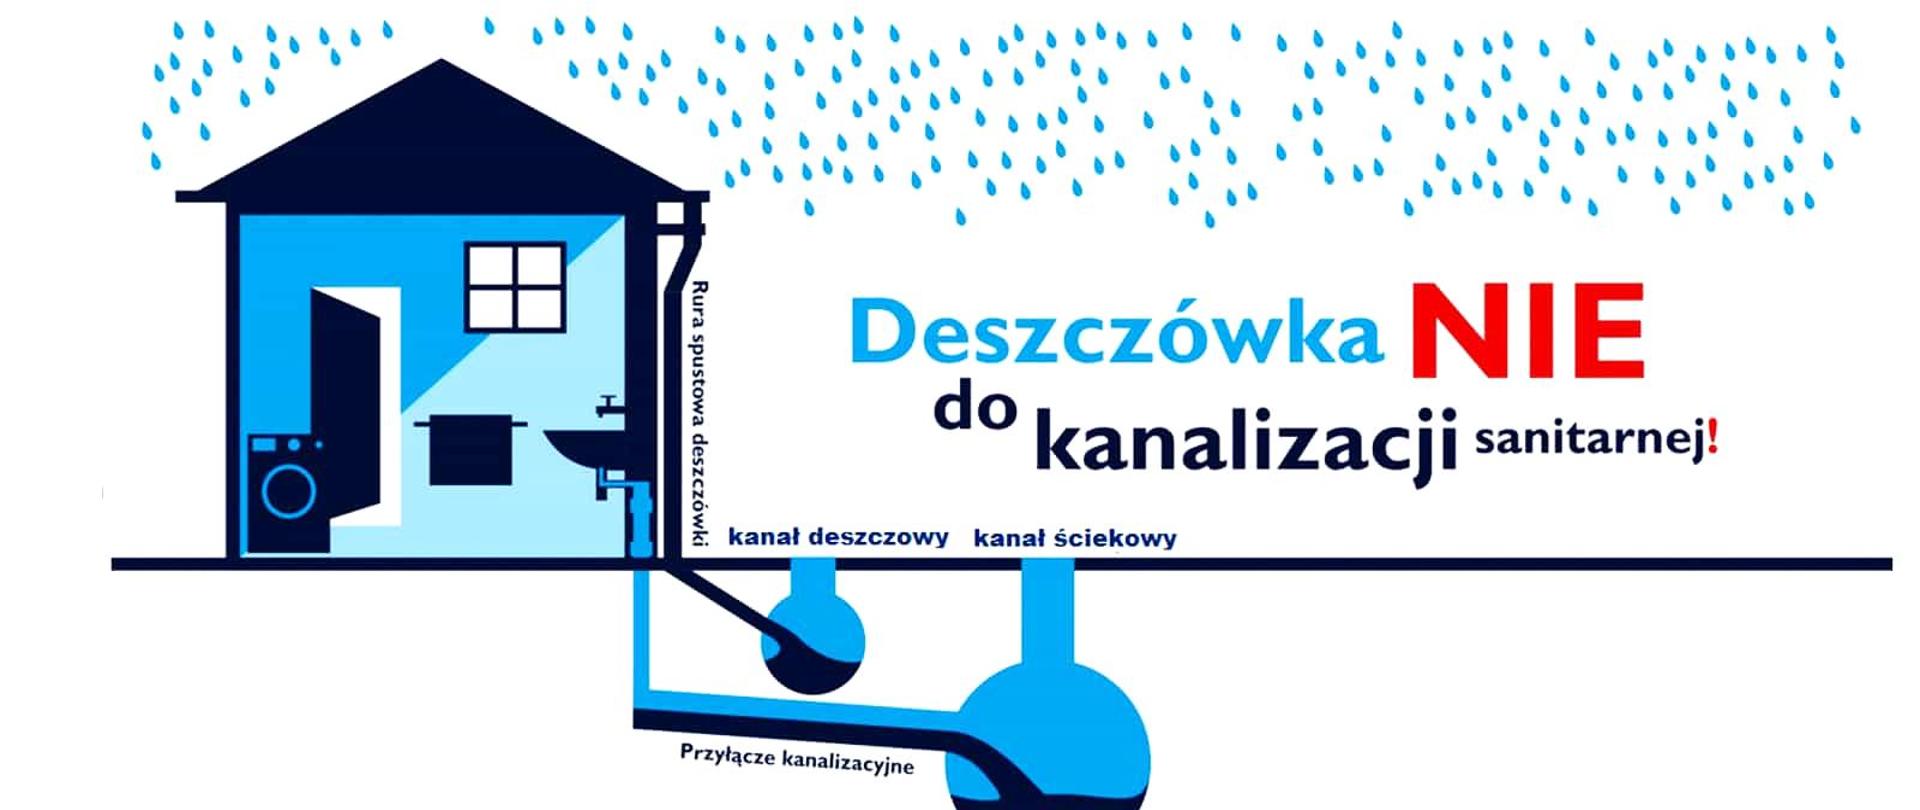 Ilustracja przedstawia dom z instalacjami: rury spustowej deszczówki, kanału deszczowego, kanału ściekowego, przyłączem kanalizacyjnym, oraz napis "Deszczówka nie do kanalizacji sanitarnej!"